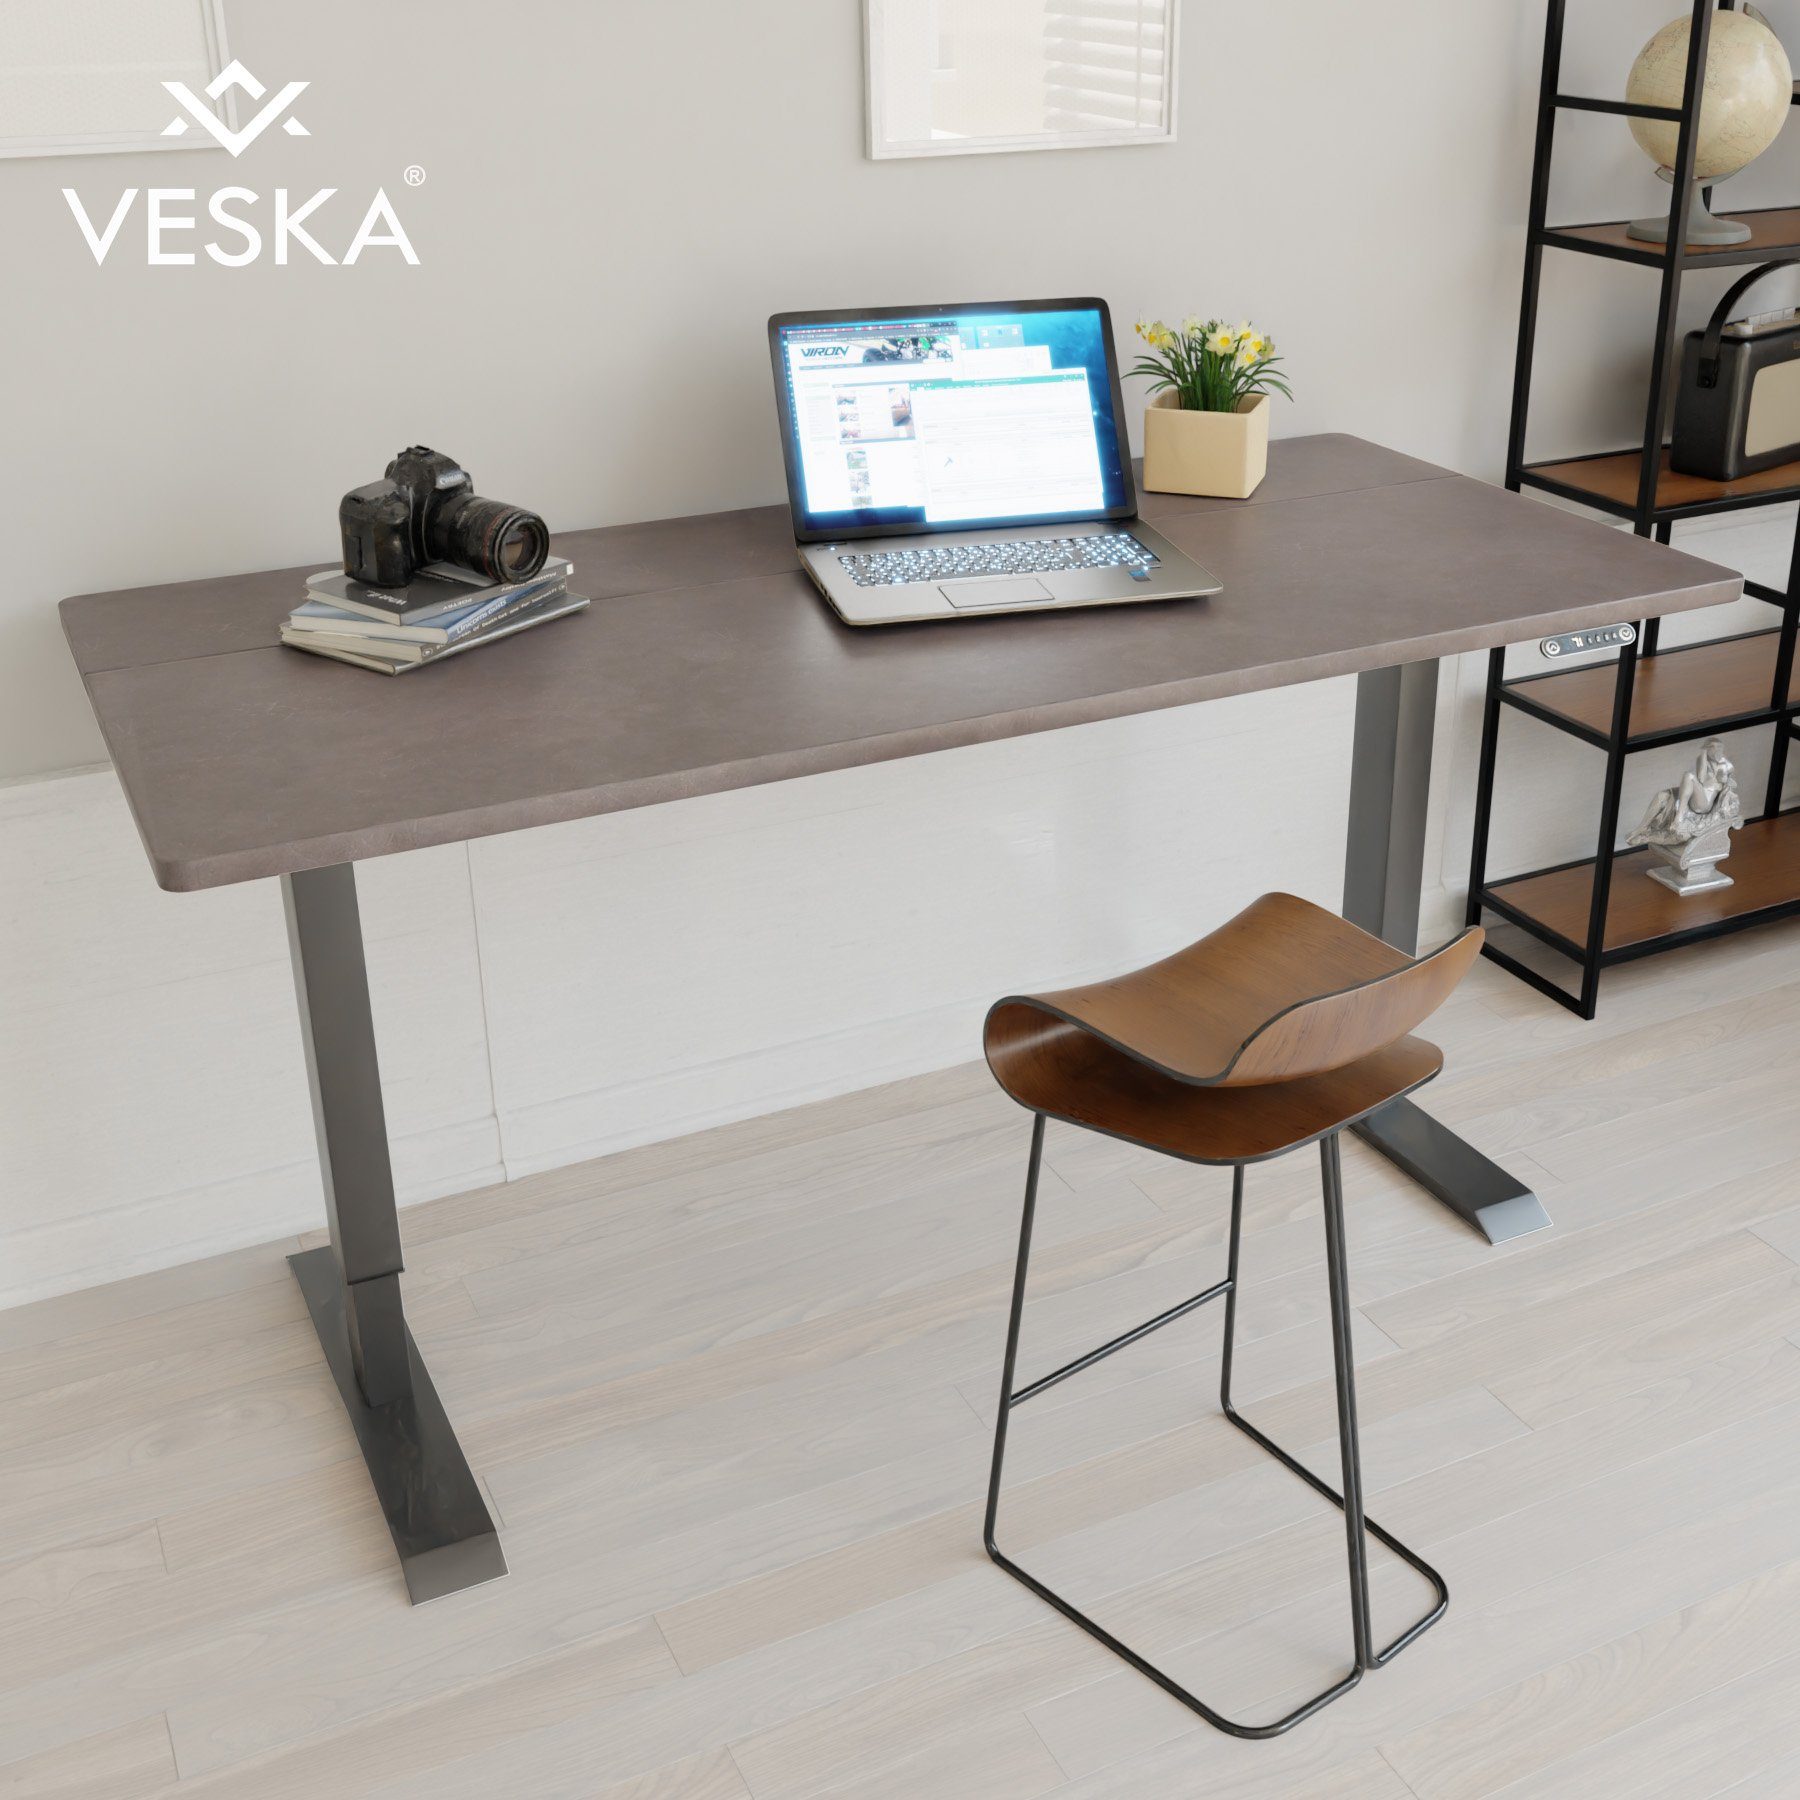 VESKA Schreibtisch Höhenverstellbar 140 x 70 cm - Bürotisch Elektrisch mit Touchscreen - Sitz- & Stehpult Home Office Anthrazit | Stein-Anthrazit